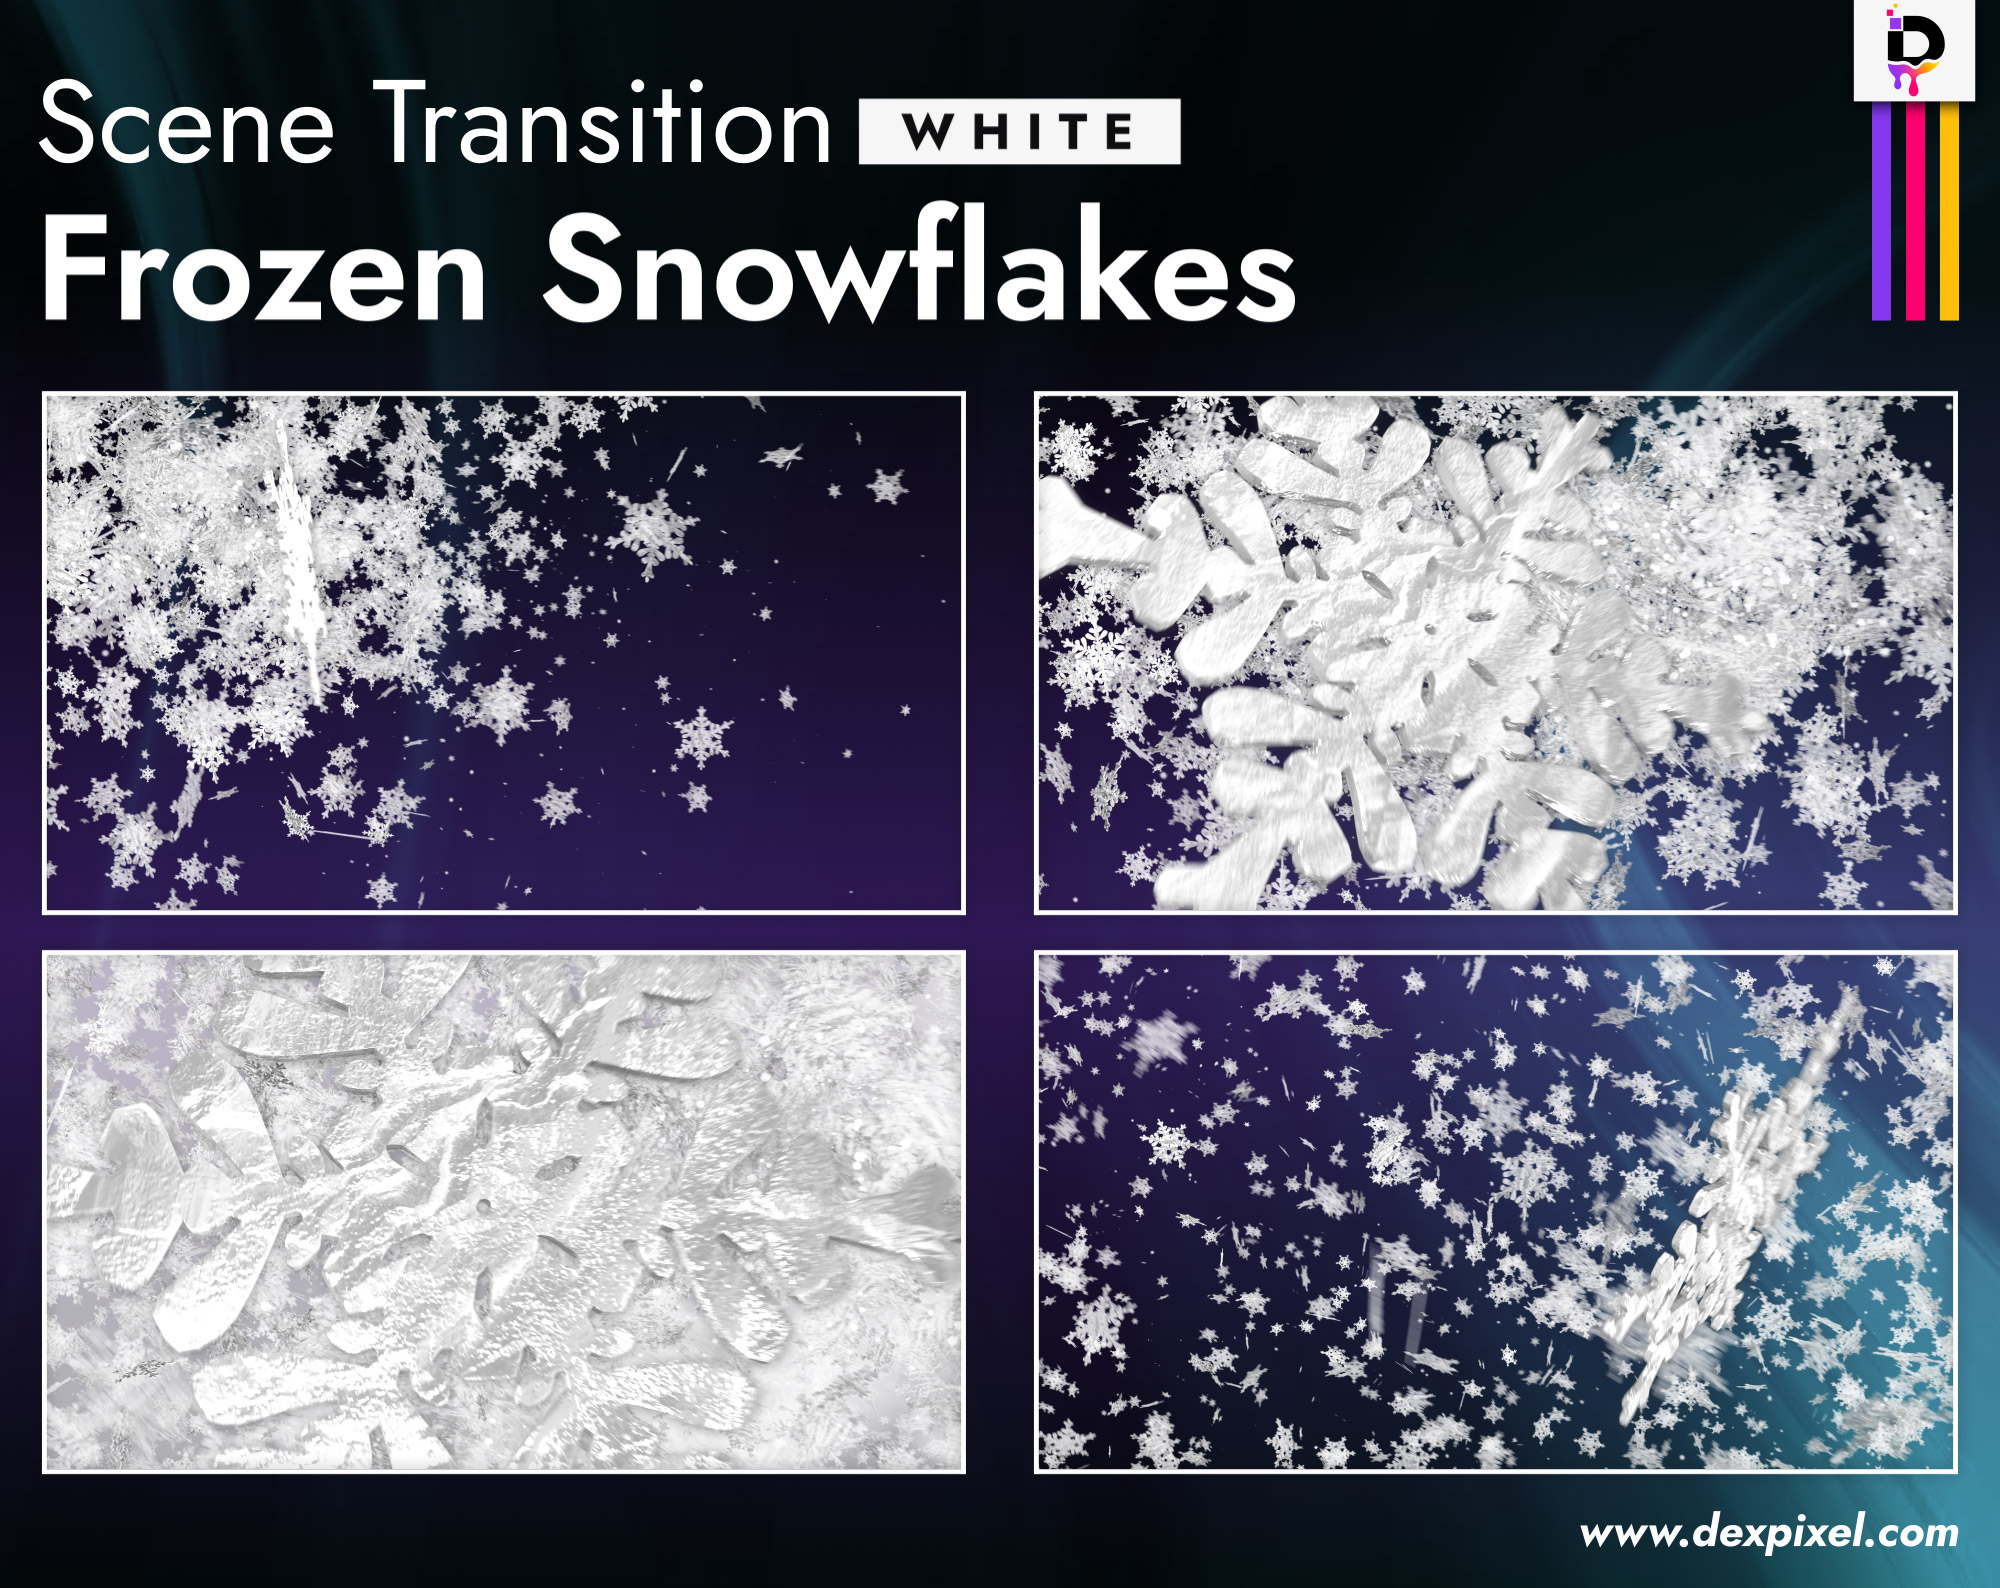 Scene Transition Dexpixel Thumbnail Frozen Snowflakes White